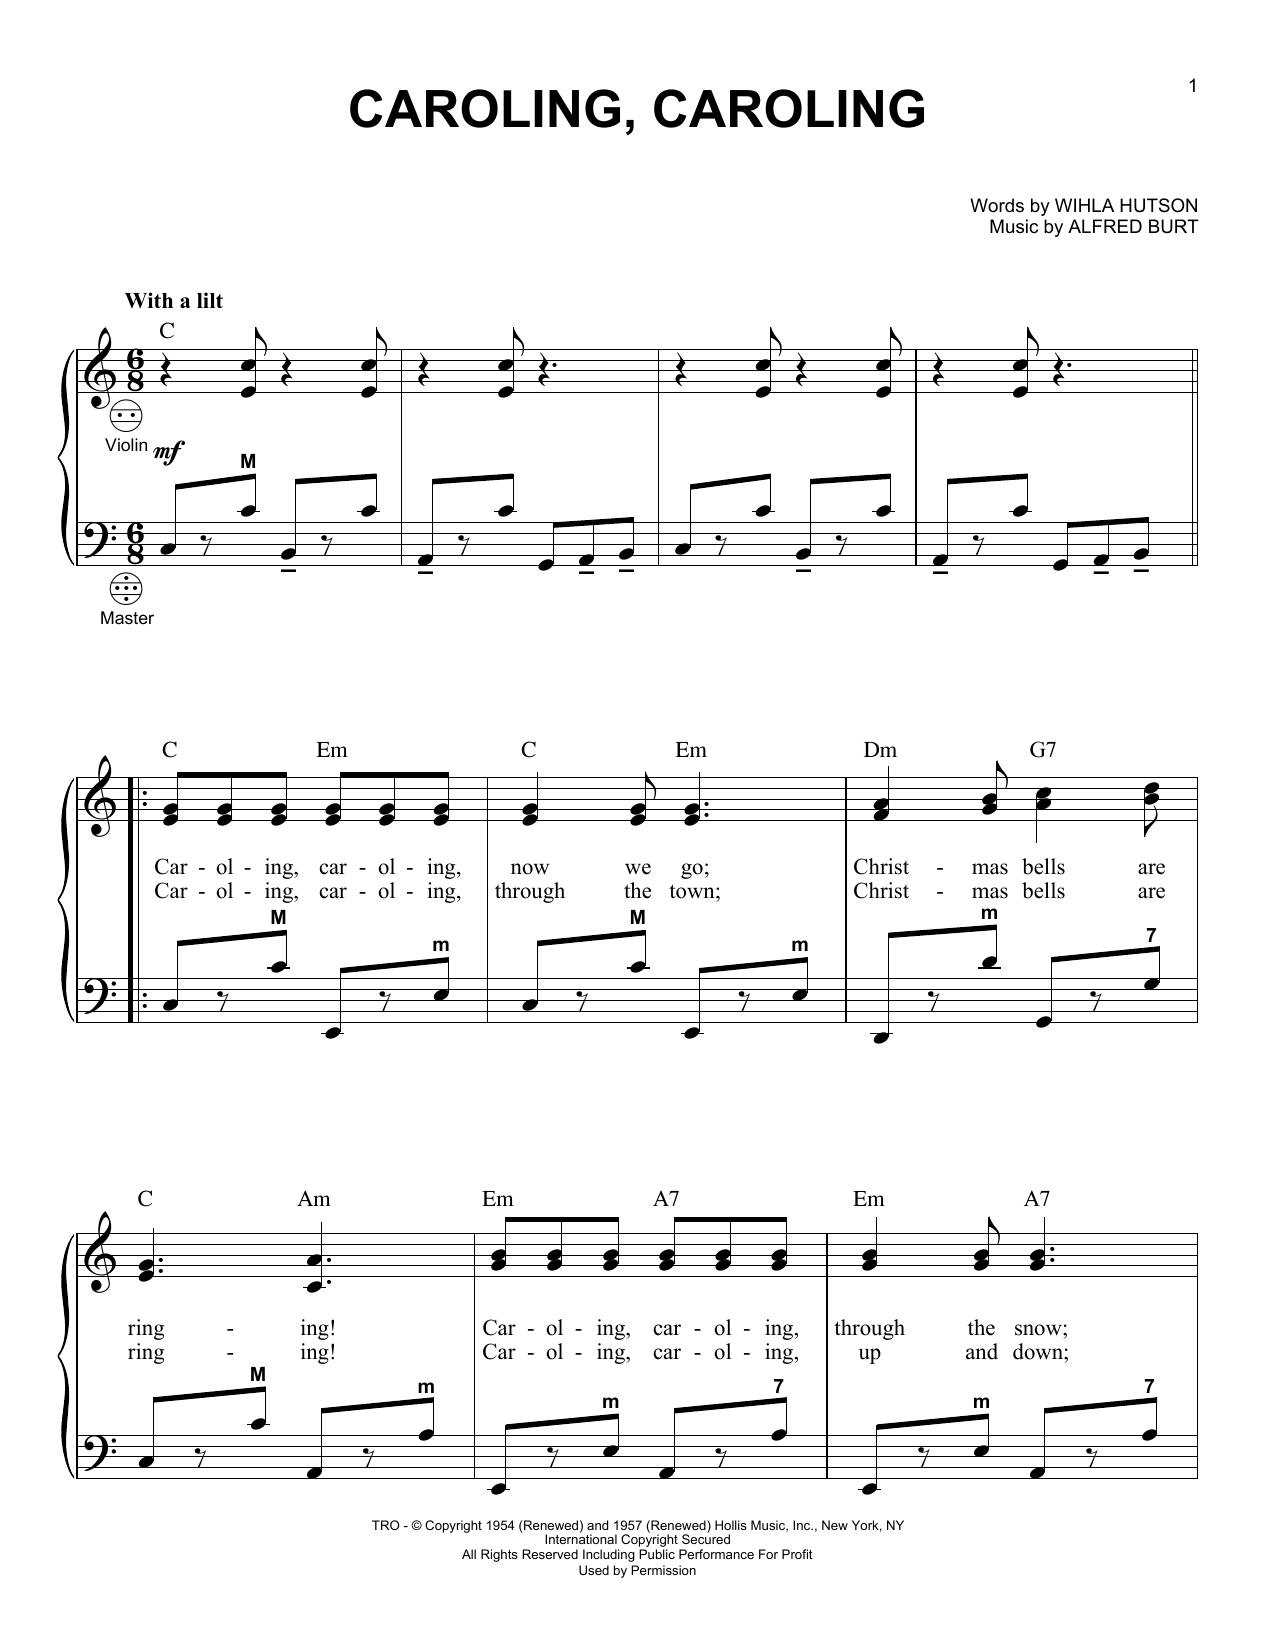 Alfred Burt Caroling, Caroling Sheet Music Notes & Chords for Alto Saxophone - Download or Print PDF